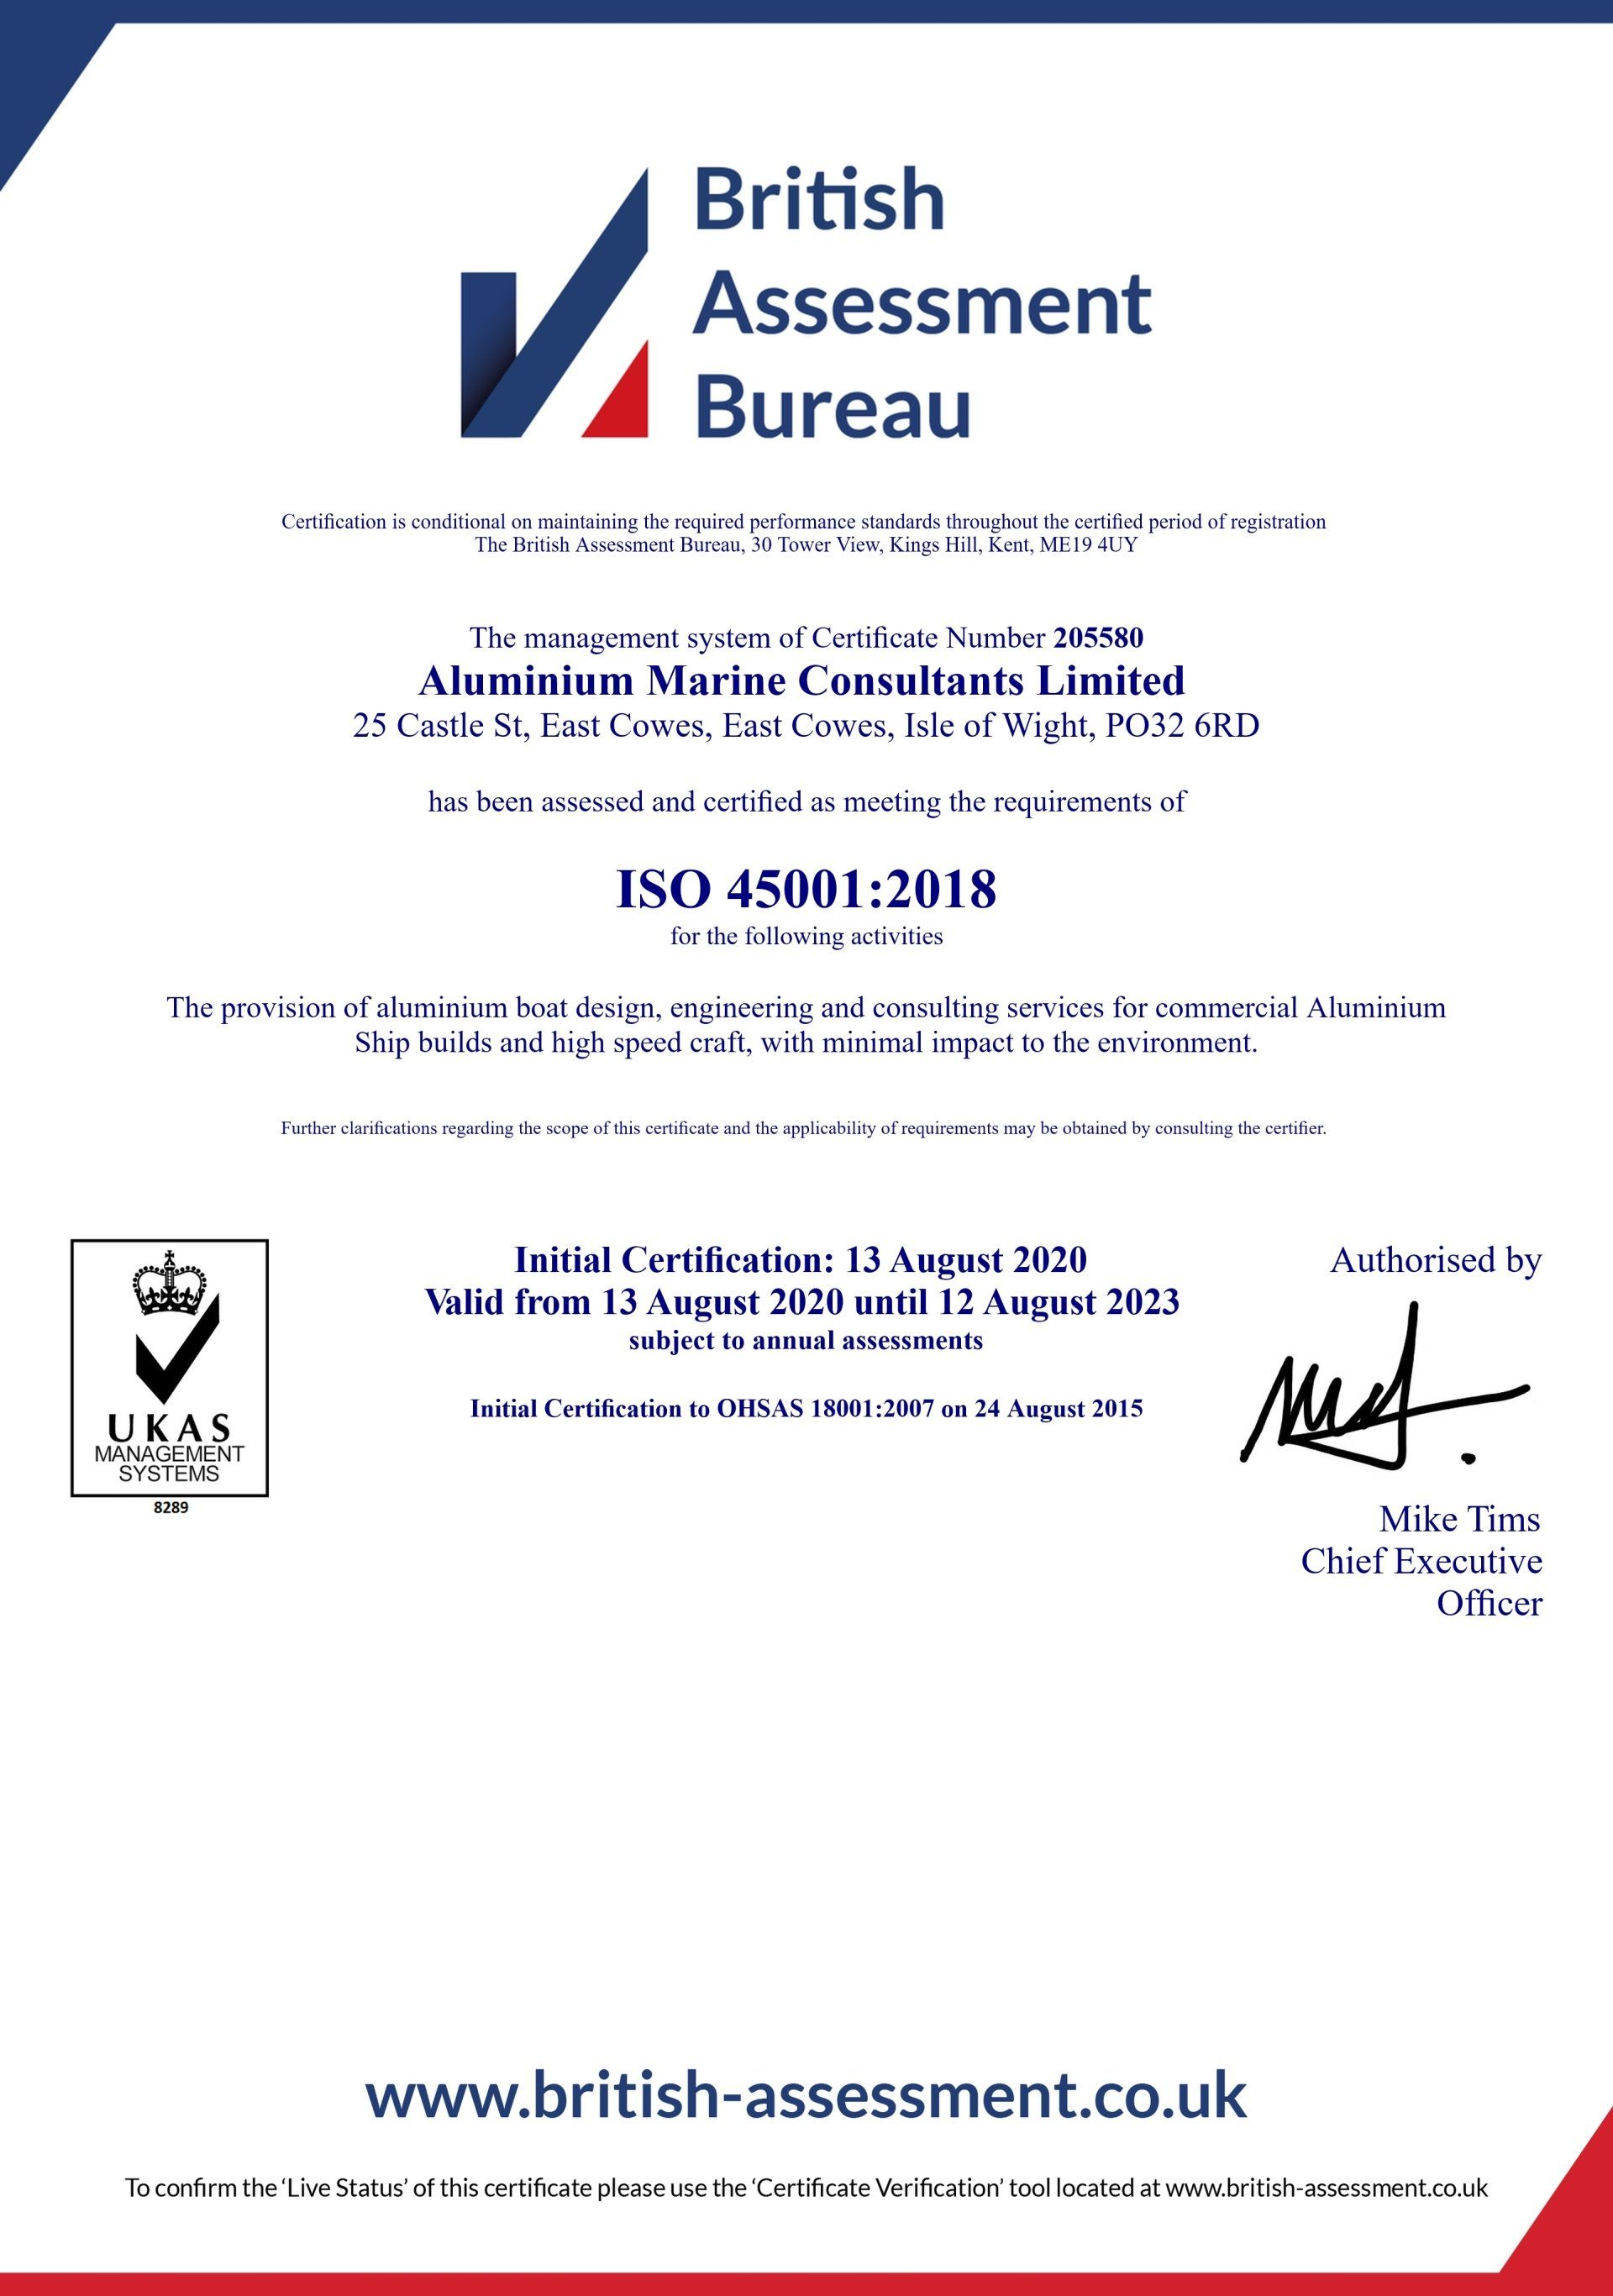 ISO 45001 certificate for Aluminium Marine Consulatants.